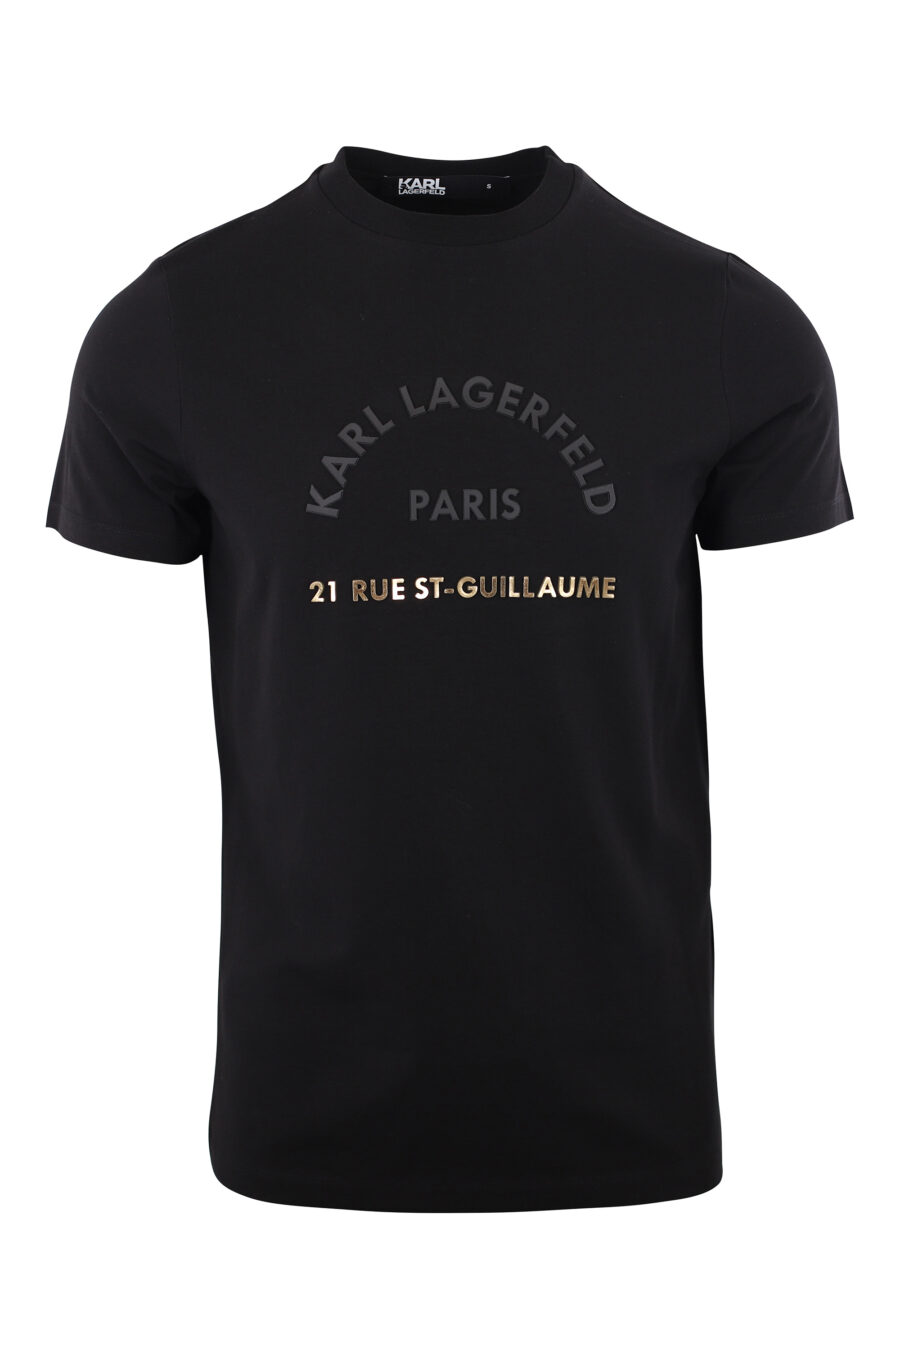 Camiseta negra con logo de goma "rue st-guillaume" dorado - IMG 2022